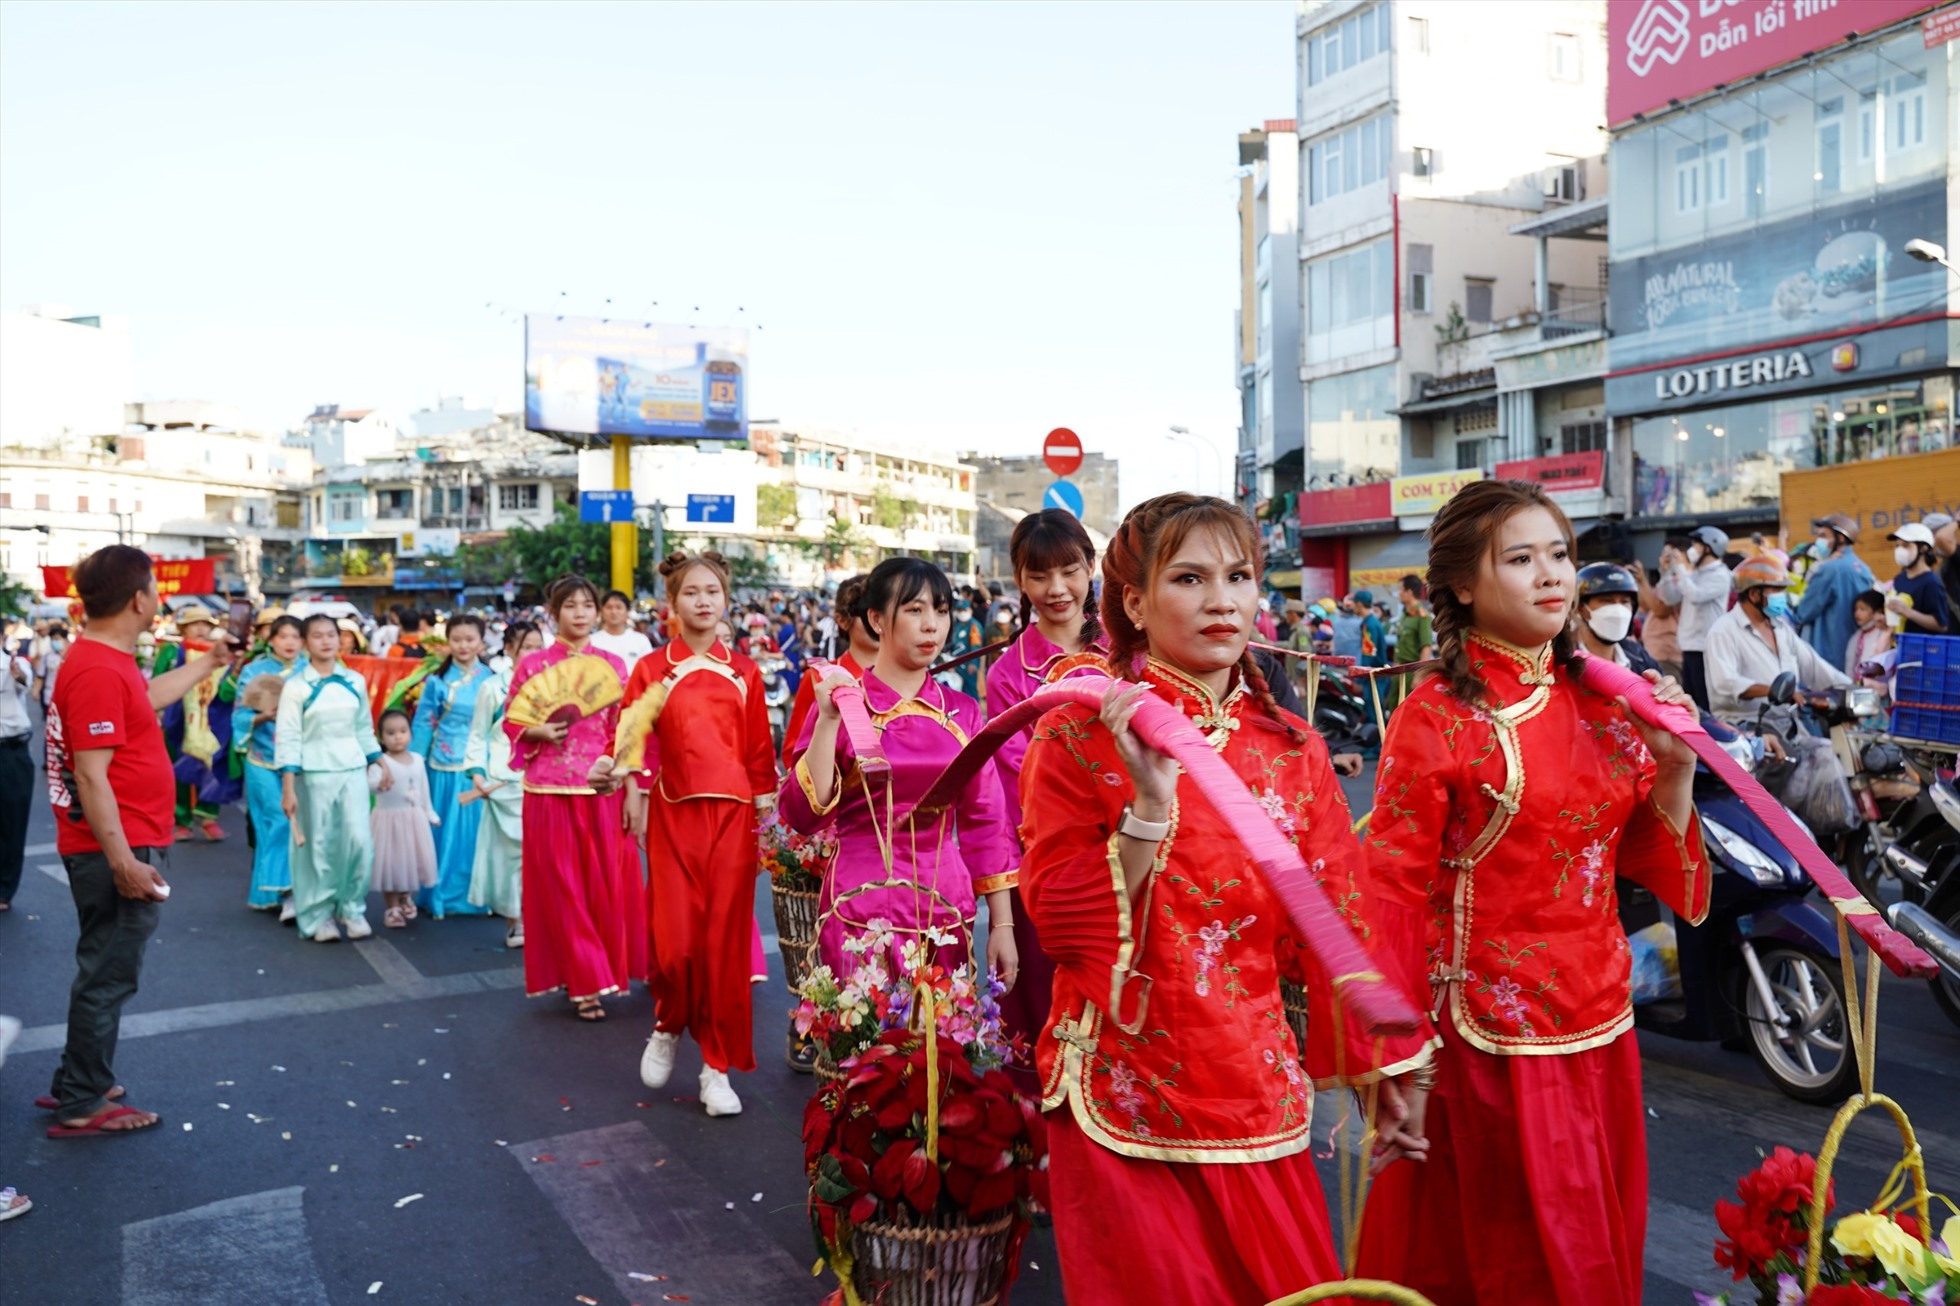 Trong trang phục truyền thống, các cô gái người Hoa biểu diễn điệu múa quạt truyền thống